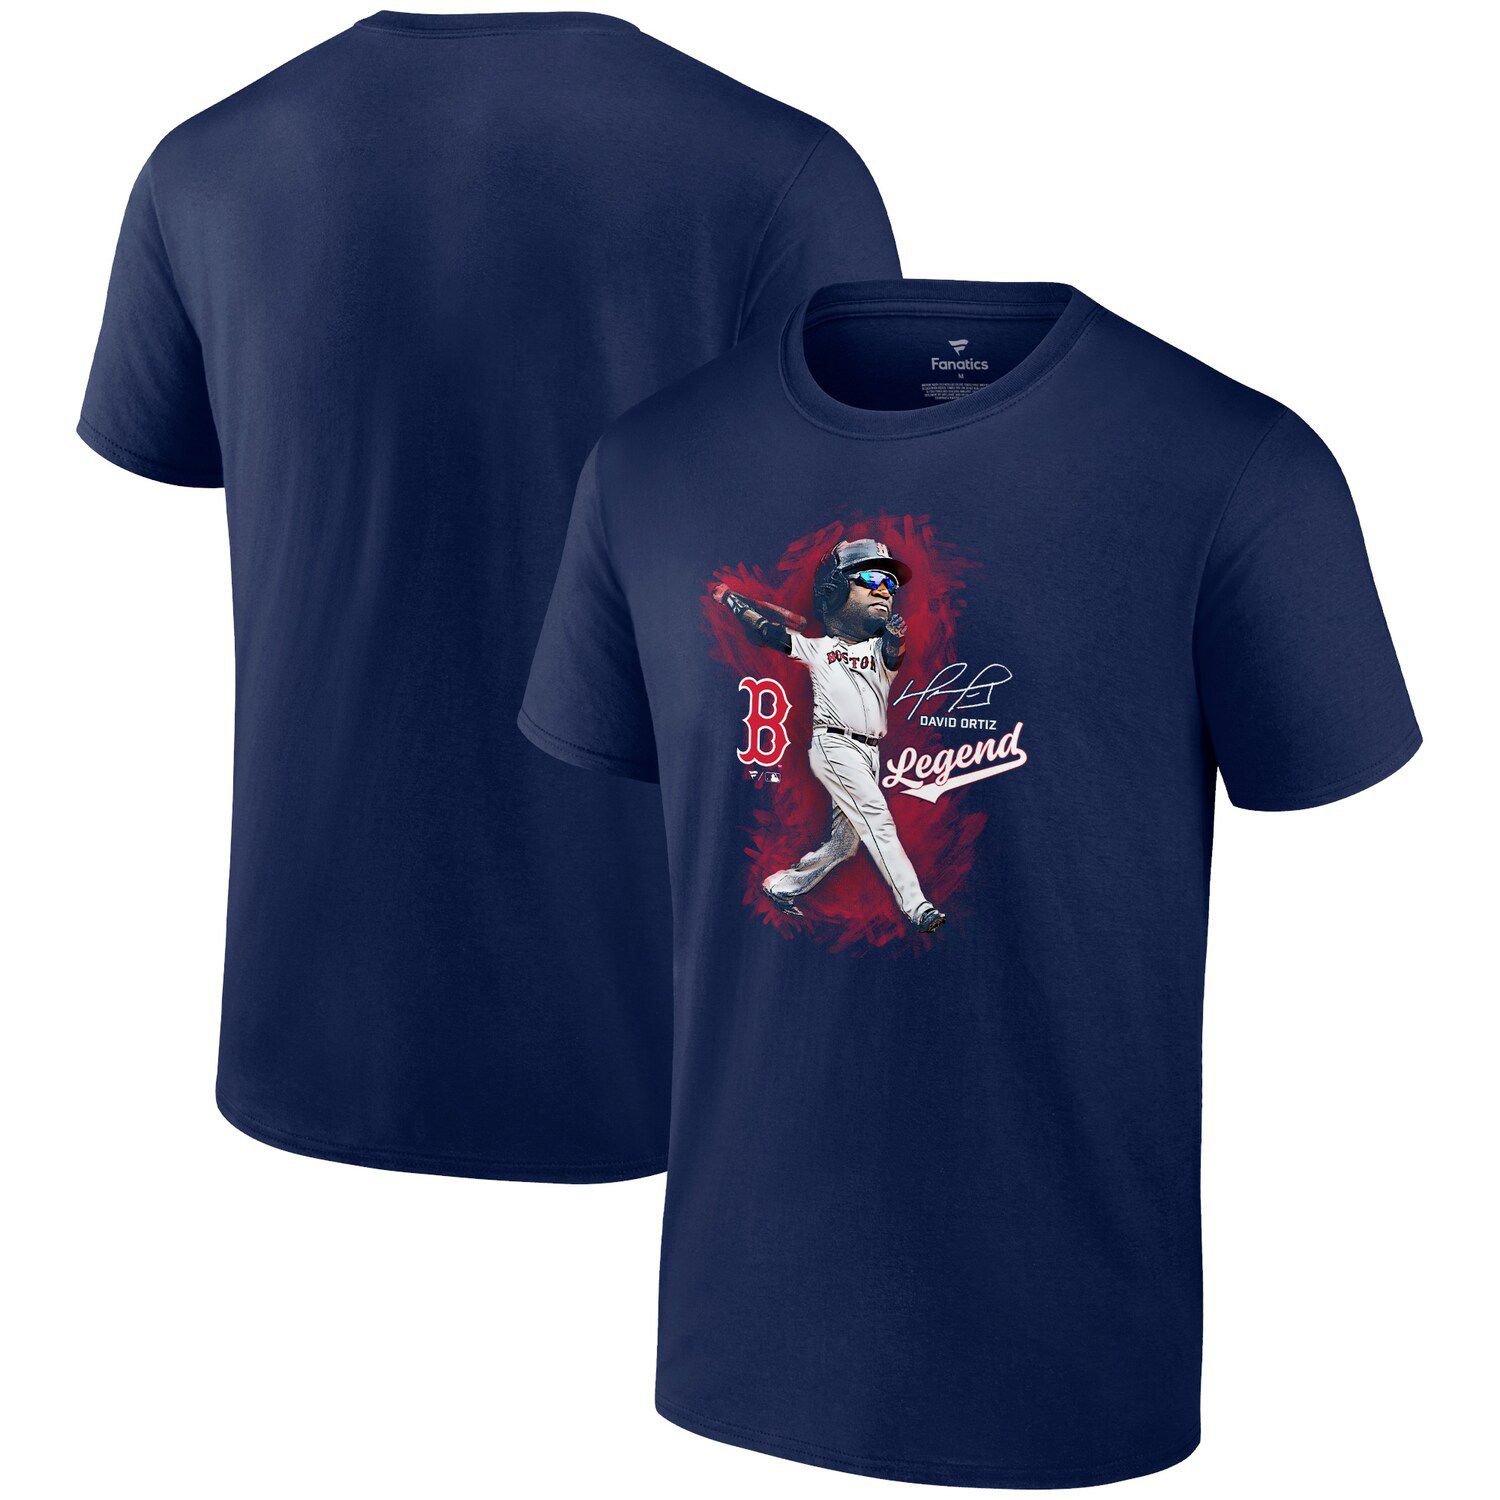 Men's Nike David Ortiz Gold Boston Red Sox Name & Number T-Shirt Size: Large